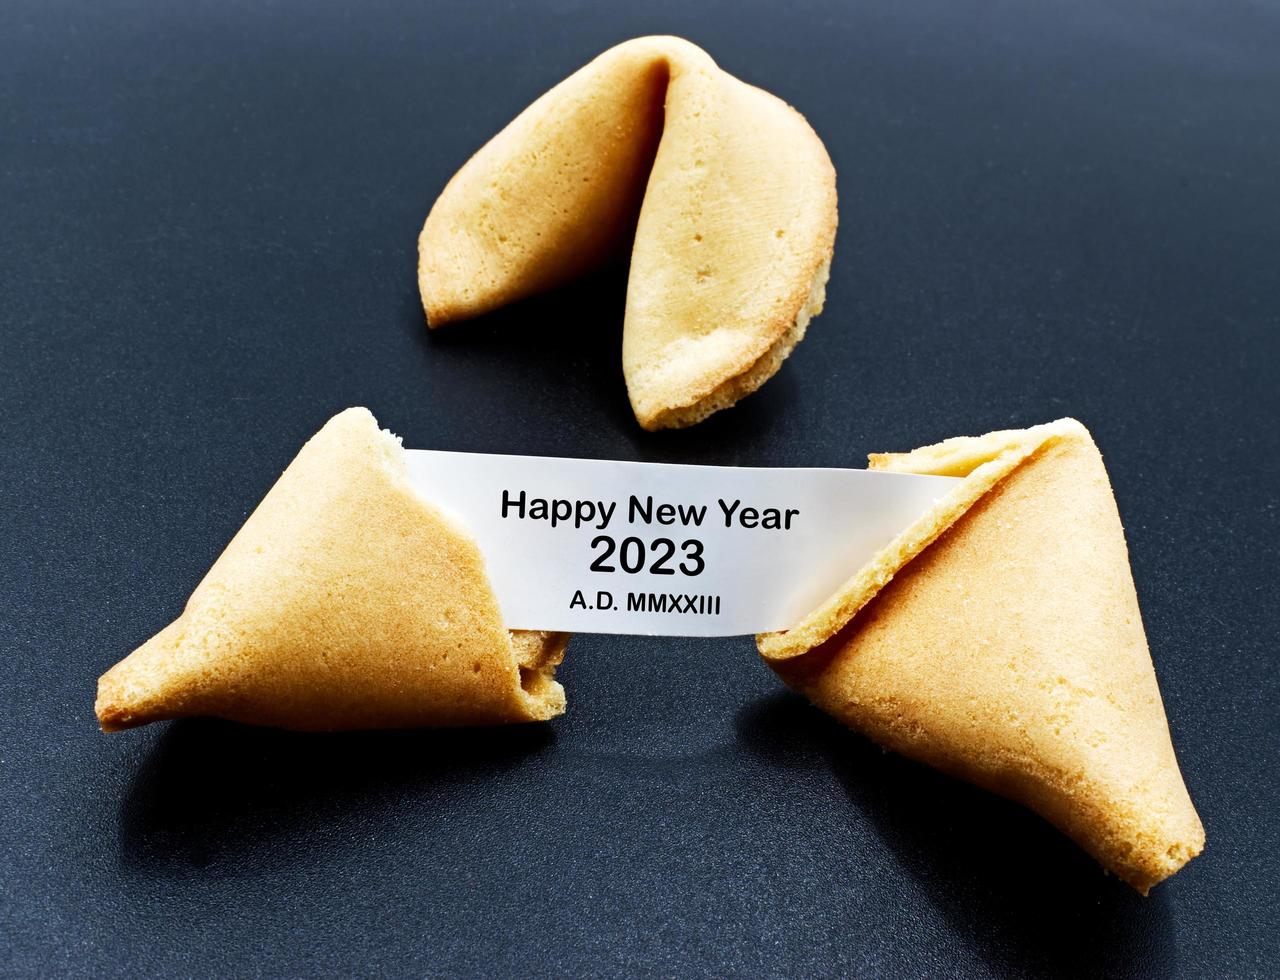 feliz ano novo 2023 ad mmxxiii. biscoito da sorte chinês rachado com mensagem. foto